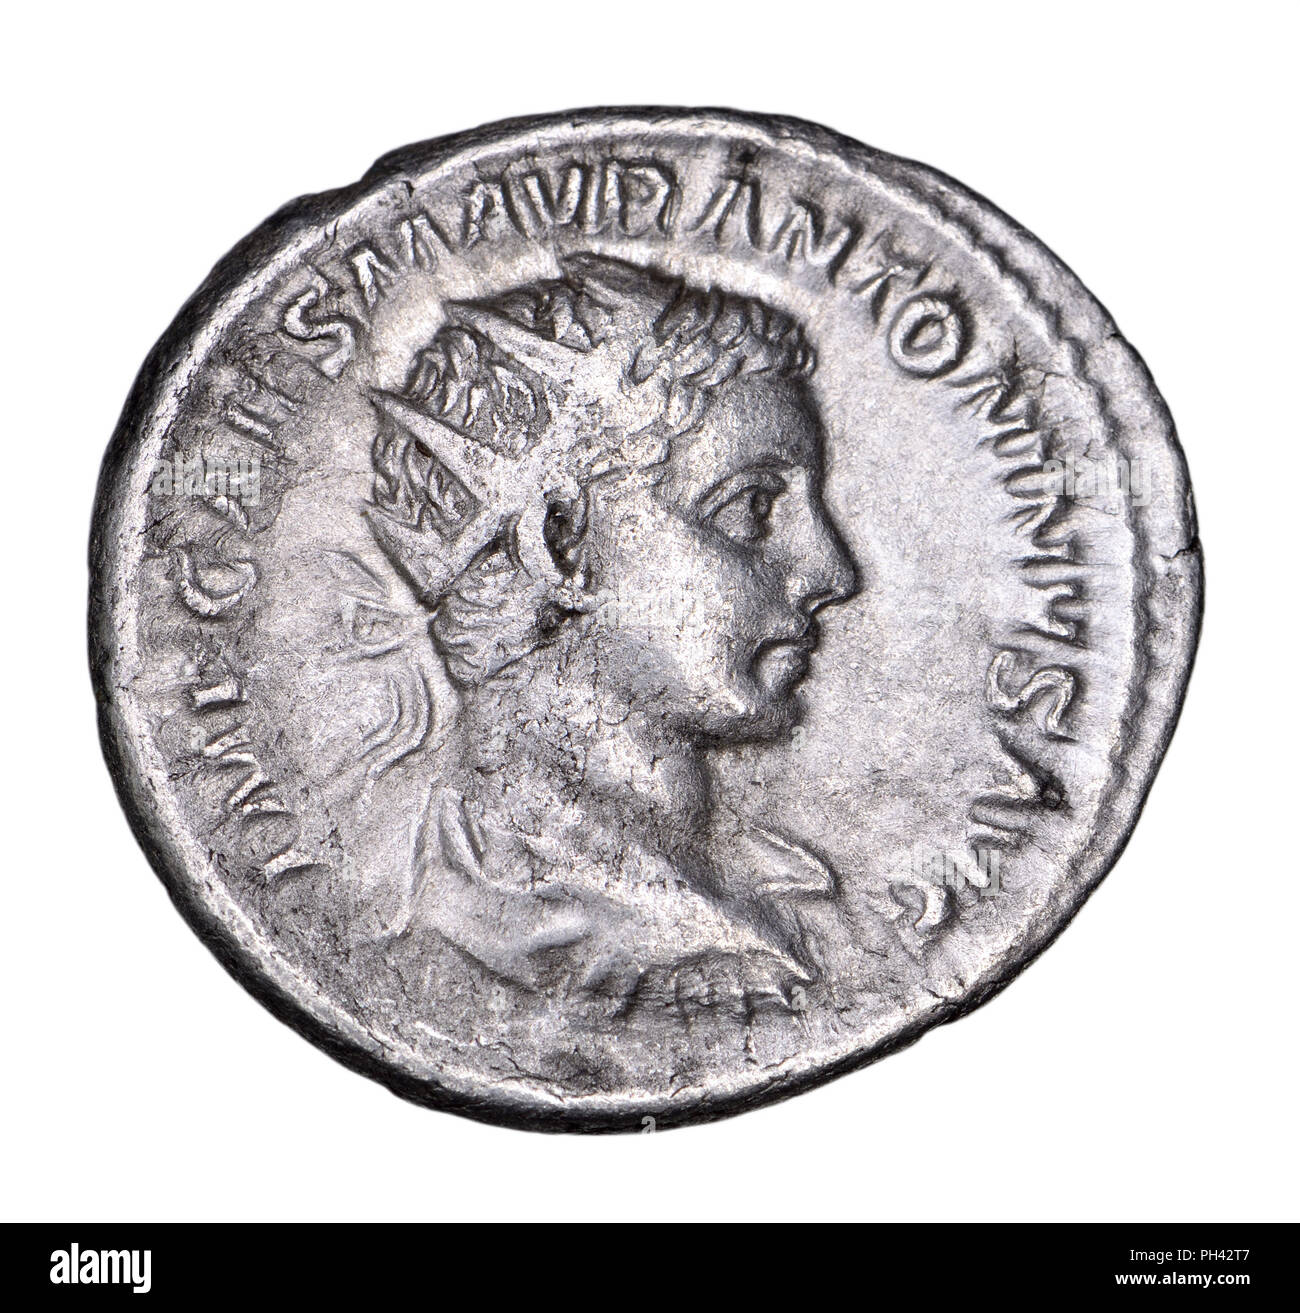 Römische Münze silber Antoninianius c 218 AD: elagabalus (auch bekannt als Bernd Steppat) Römische Kaiser 218 bis 222 AD Stockfoto